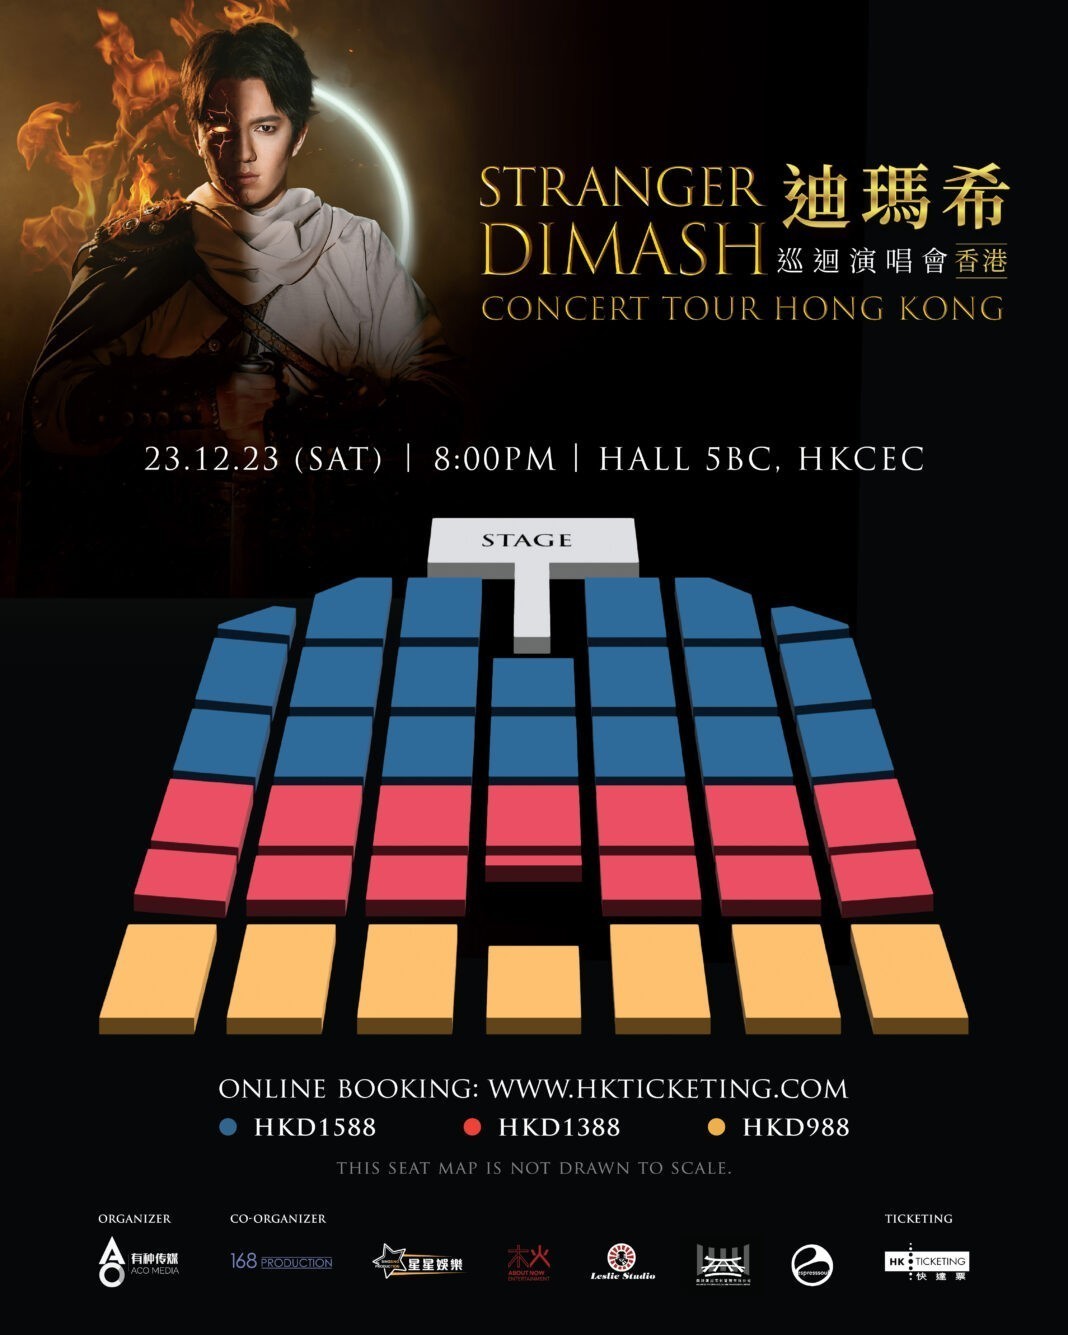 Информация о старте продаж билетов на сольный концерт Димаша в Гонконге